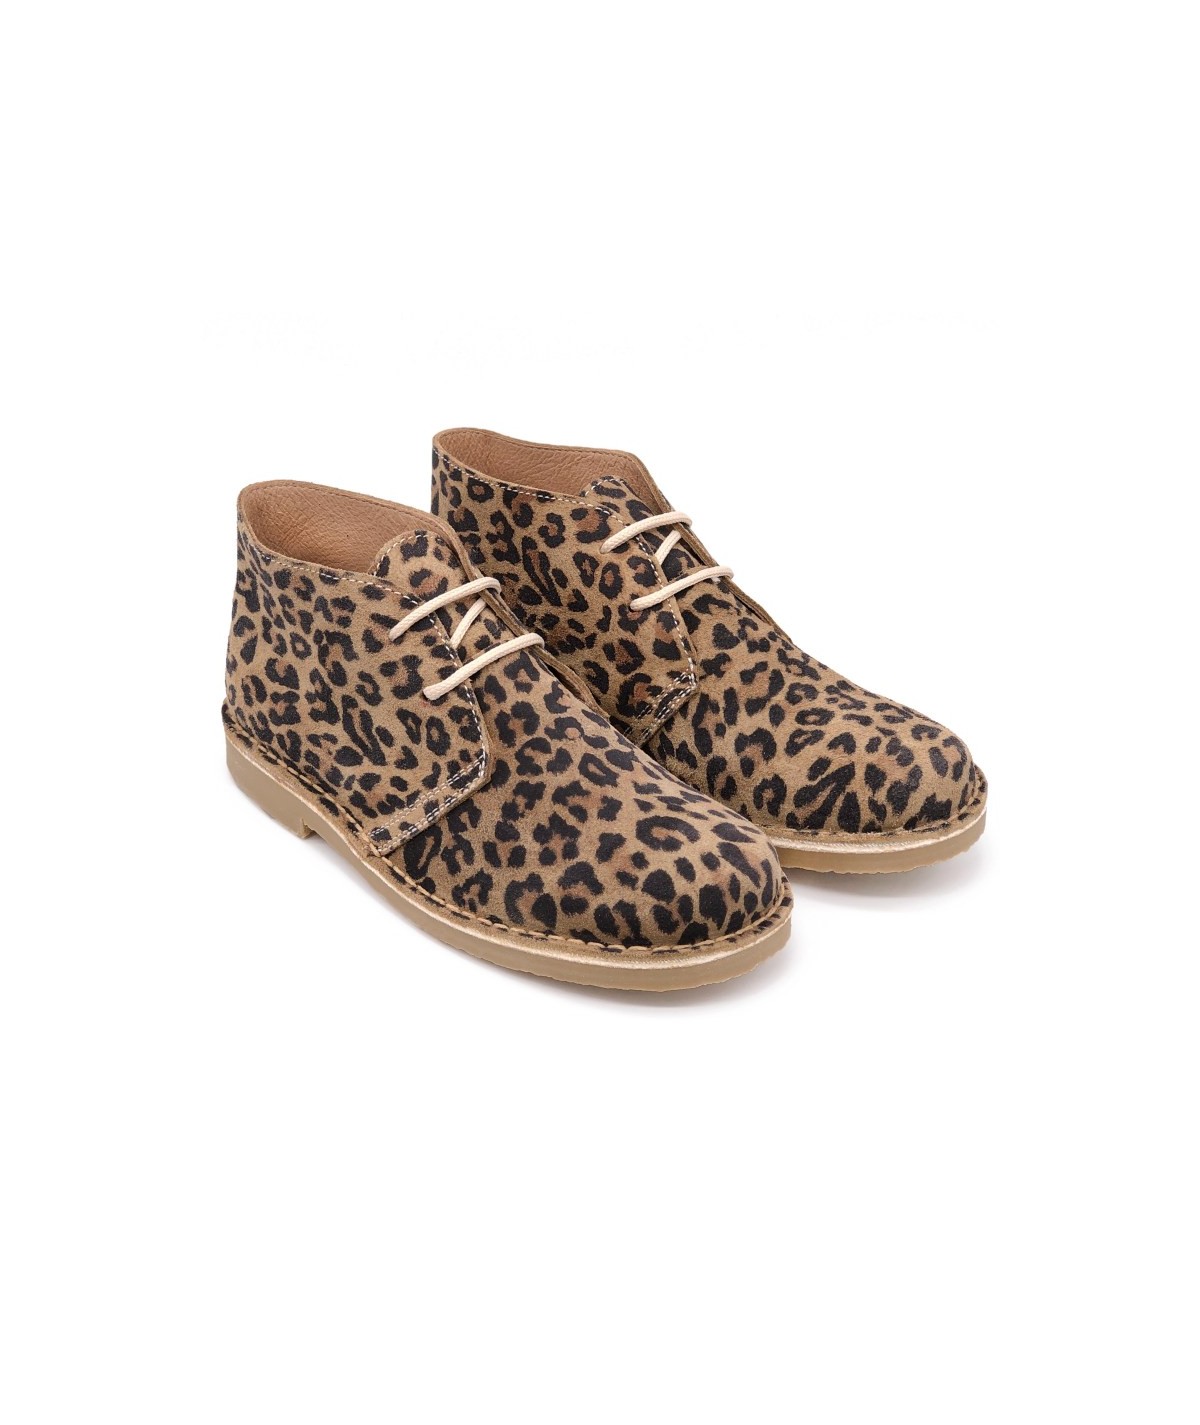 Leopard Stiefel für frauen